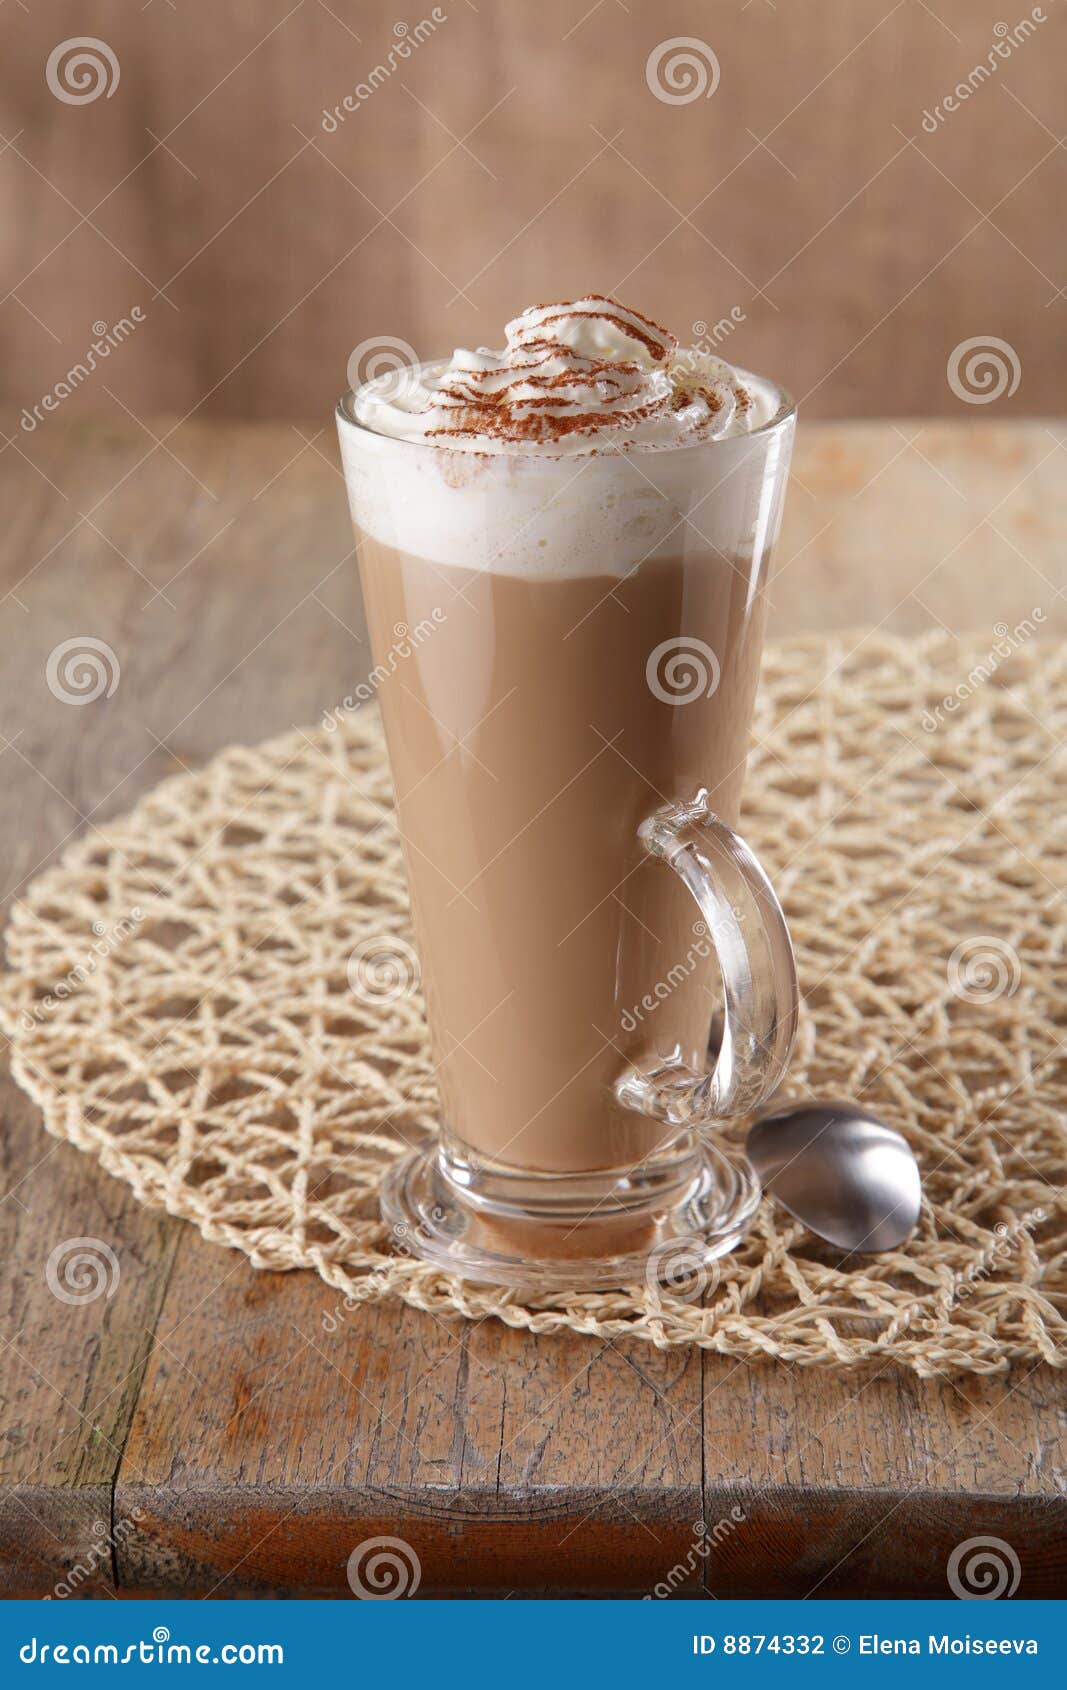 coffee latte macchiato with cream in glass